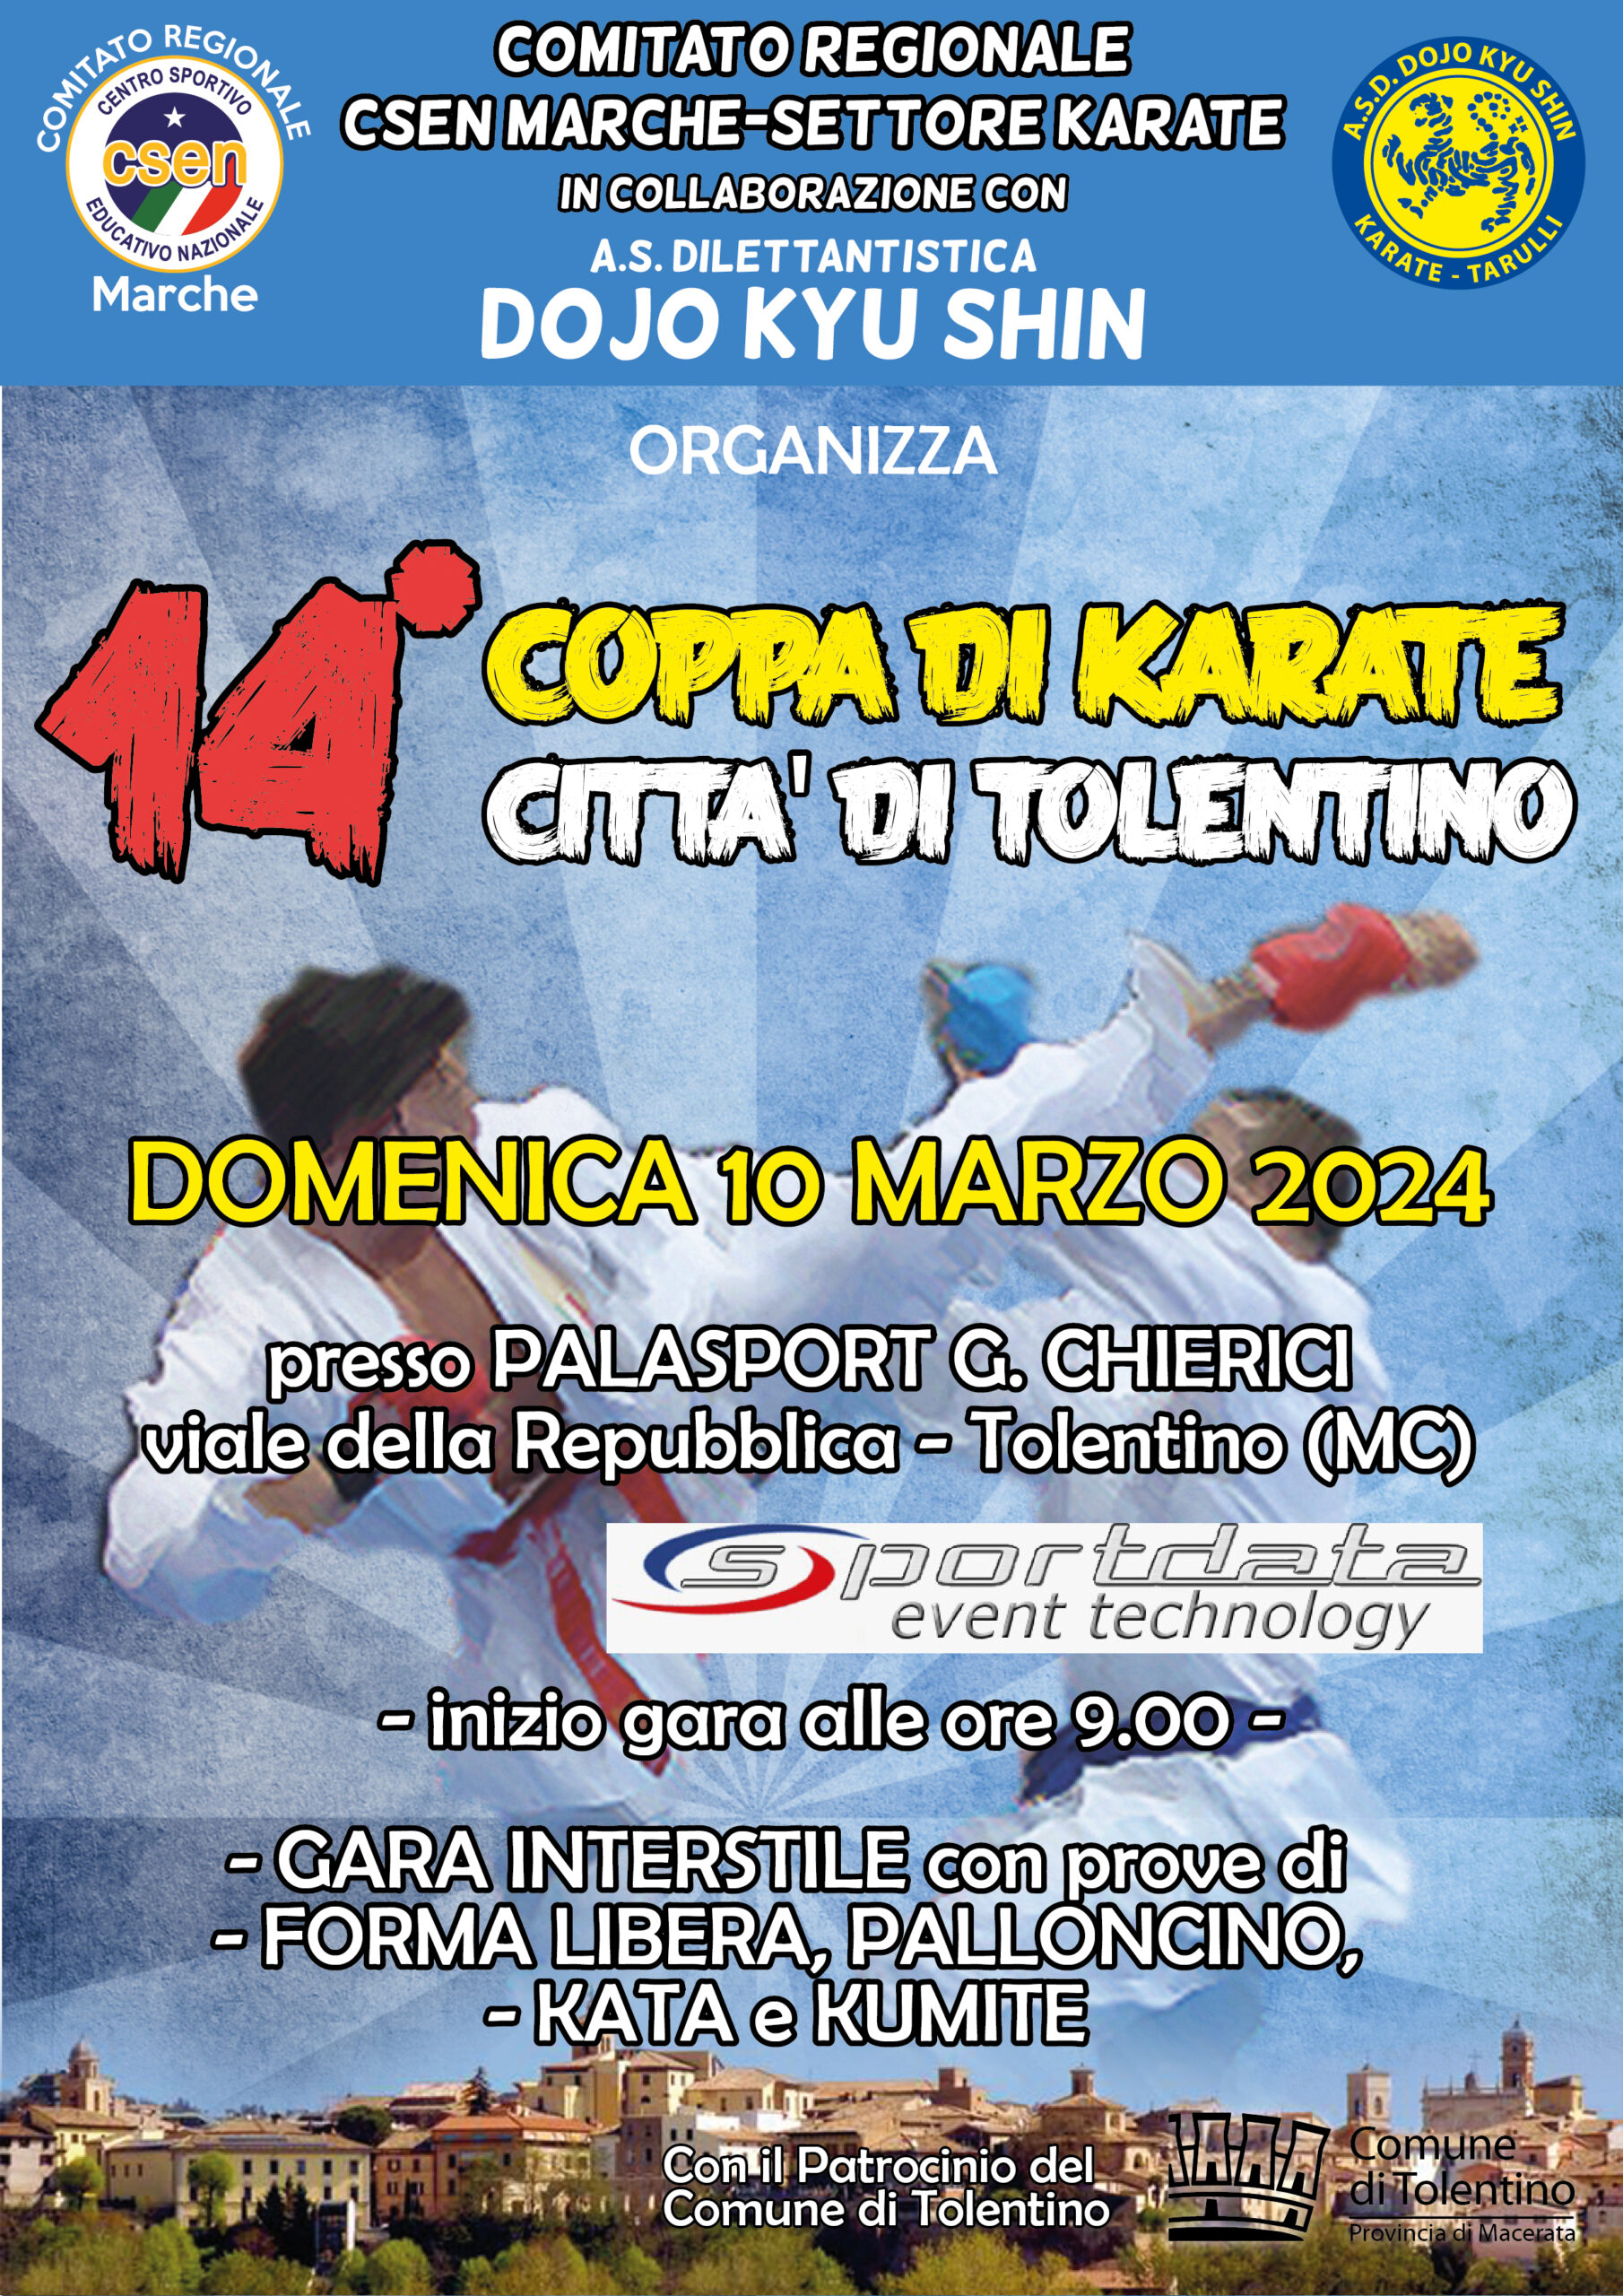 CRMarche Csen Karate: 14^ Coppa di Karate Città di Tolentino – Domenica 10 Marzo 2024.